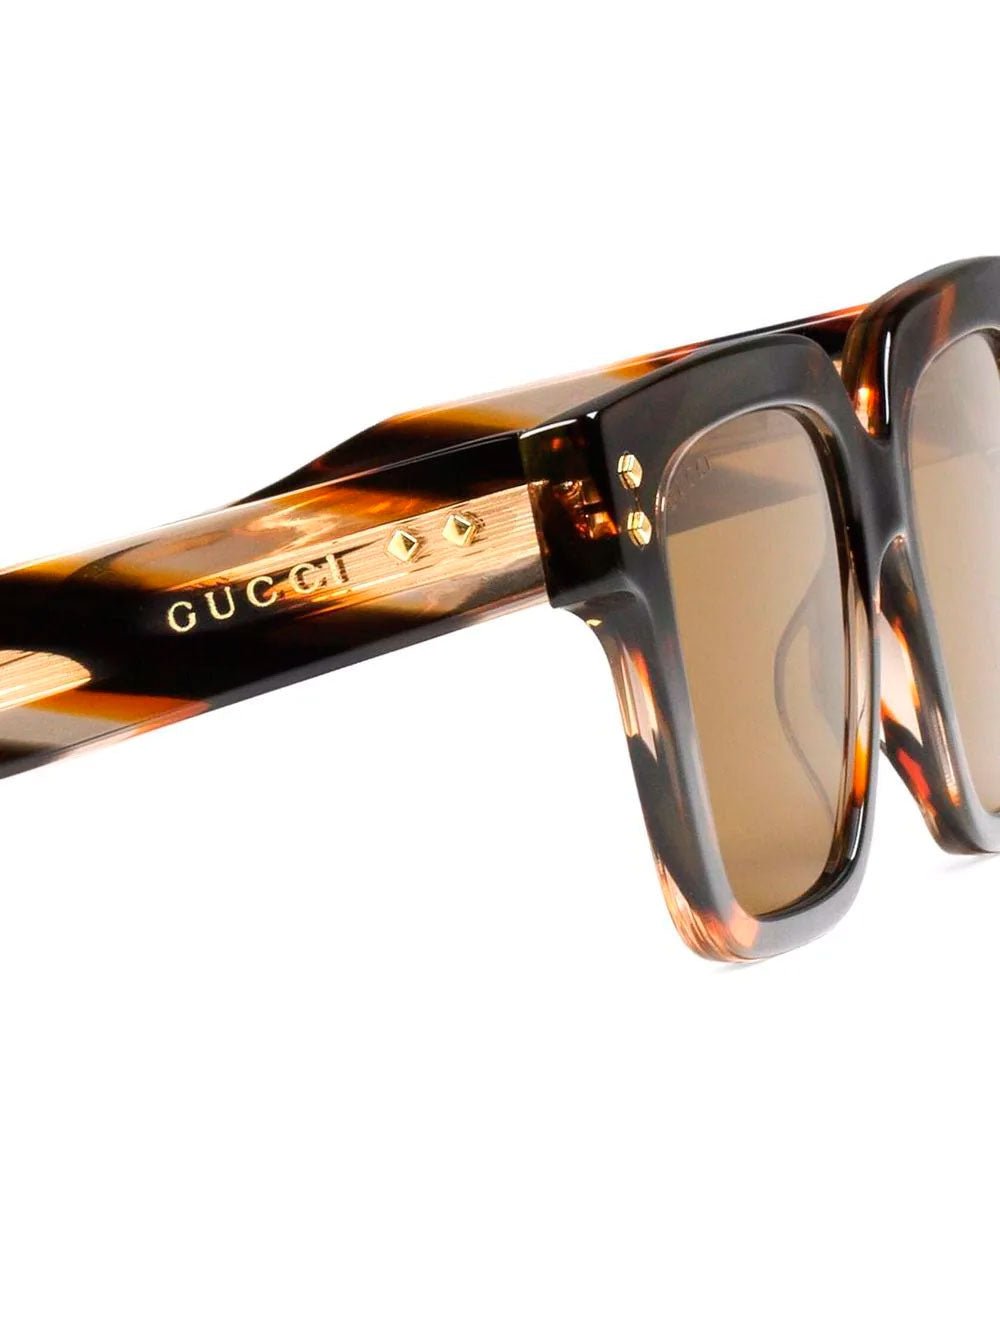 Gucci1084 Sunglasses at Fashion Clinic